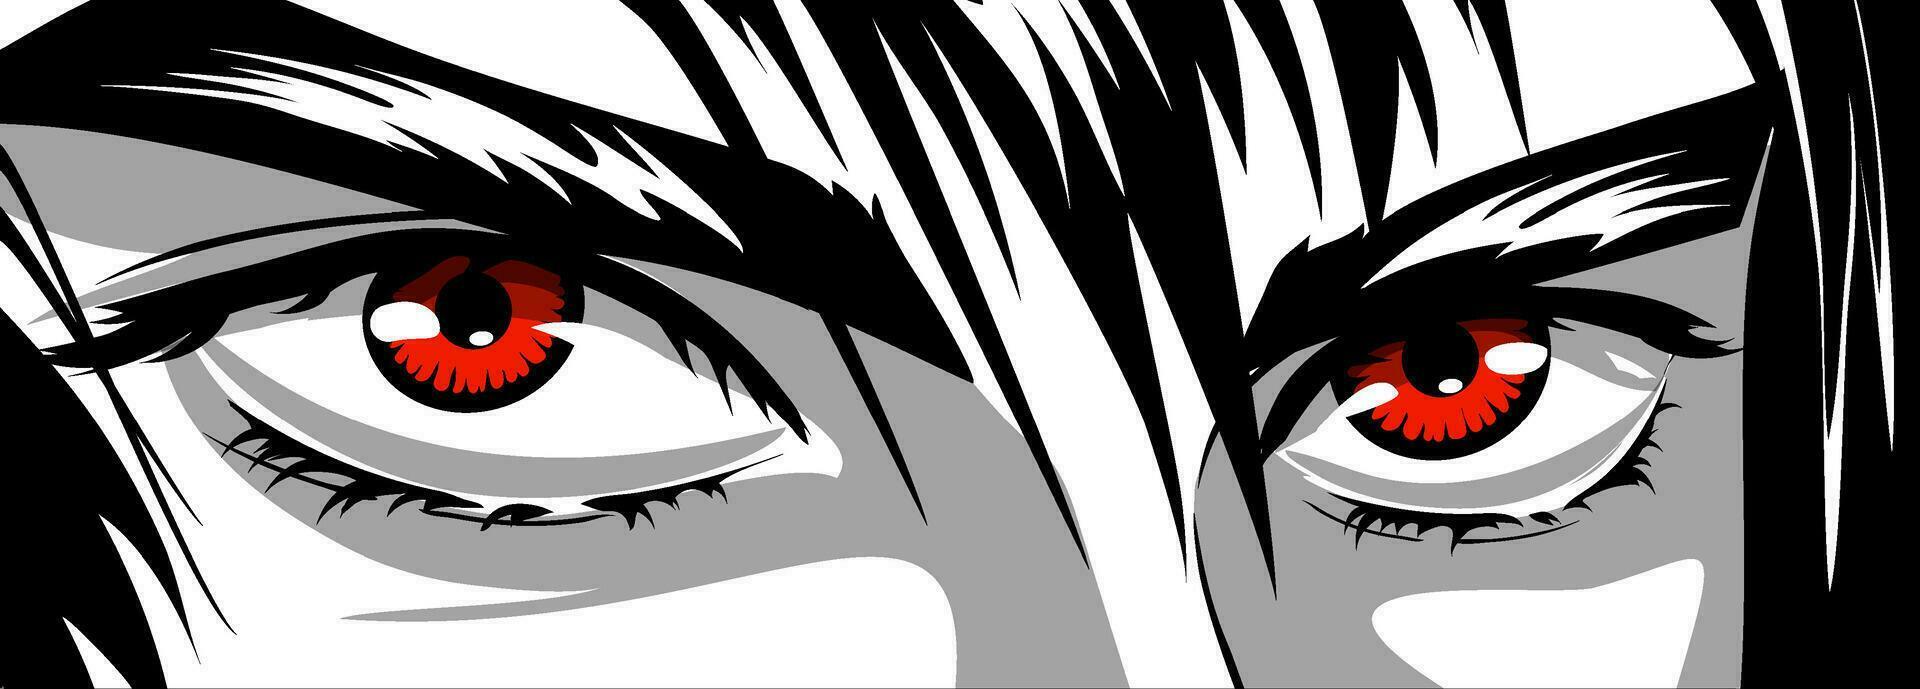 rosso occhi, arrabbiato Guarda di un' uomo nel manga e anime stile. vettore